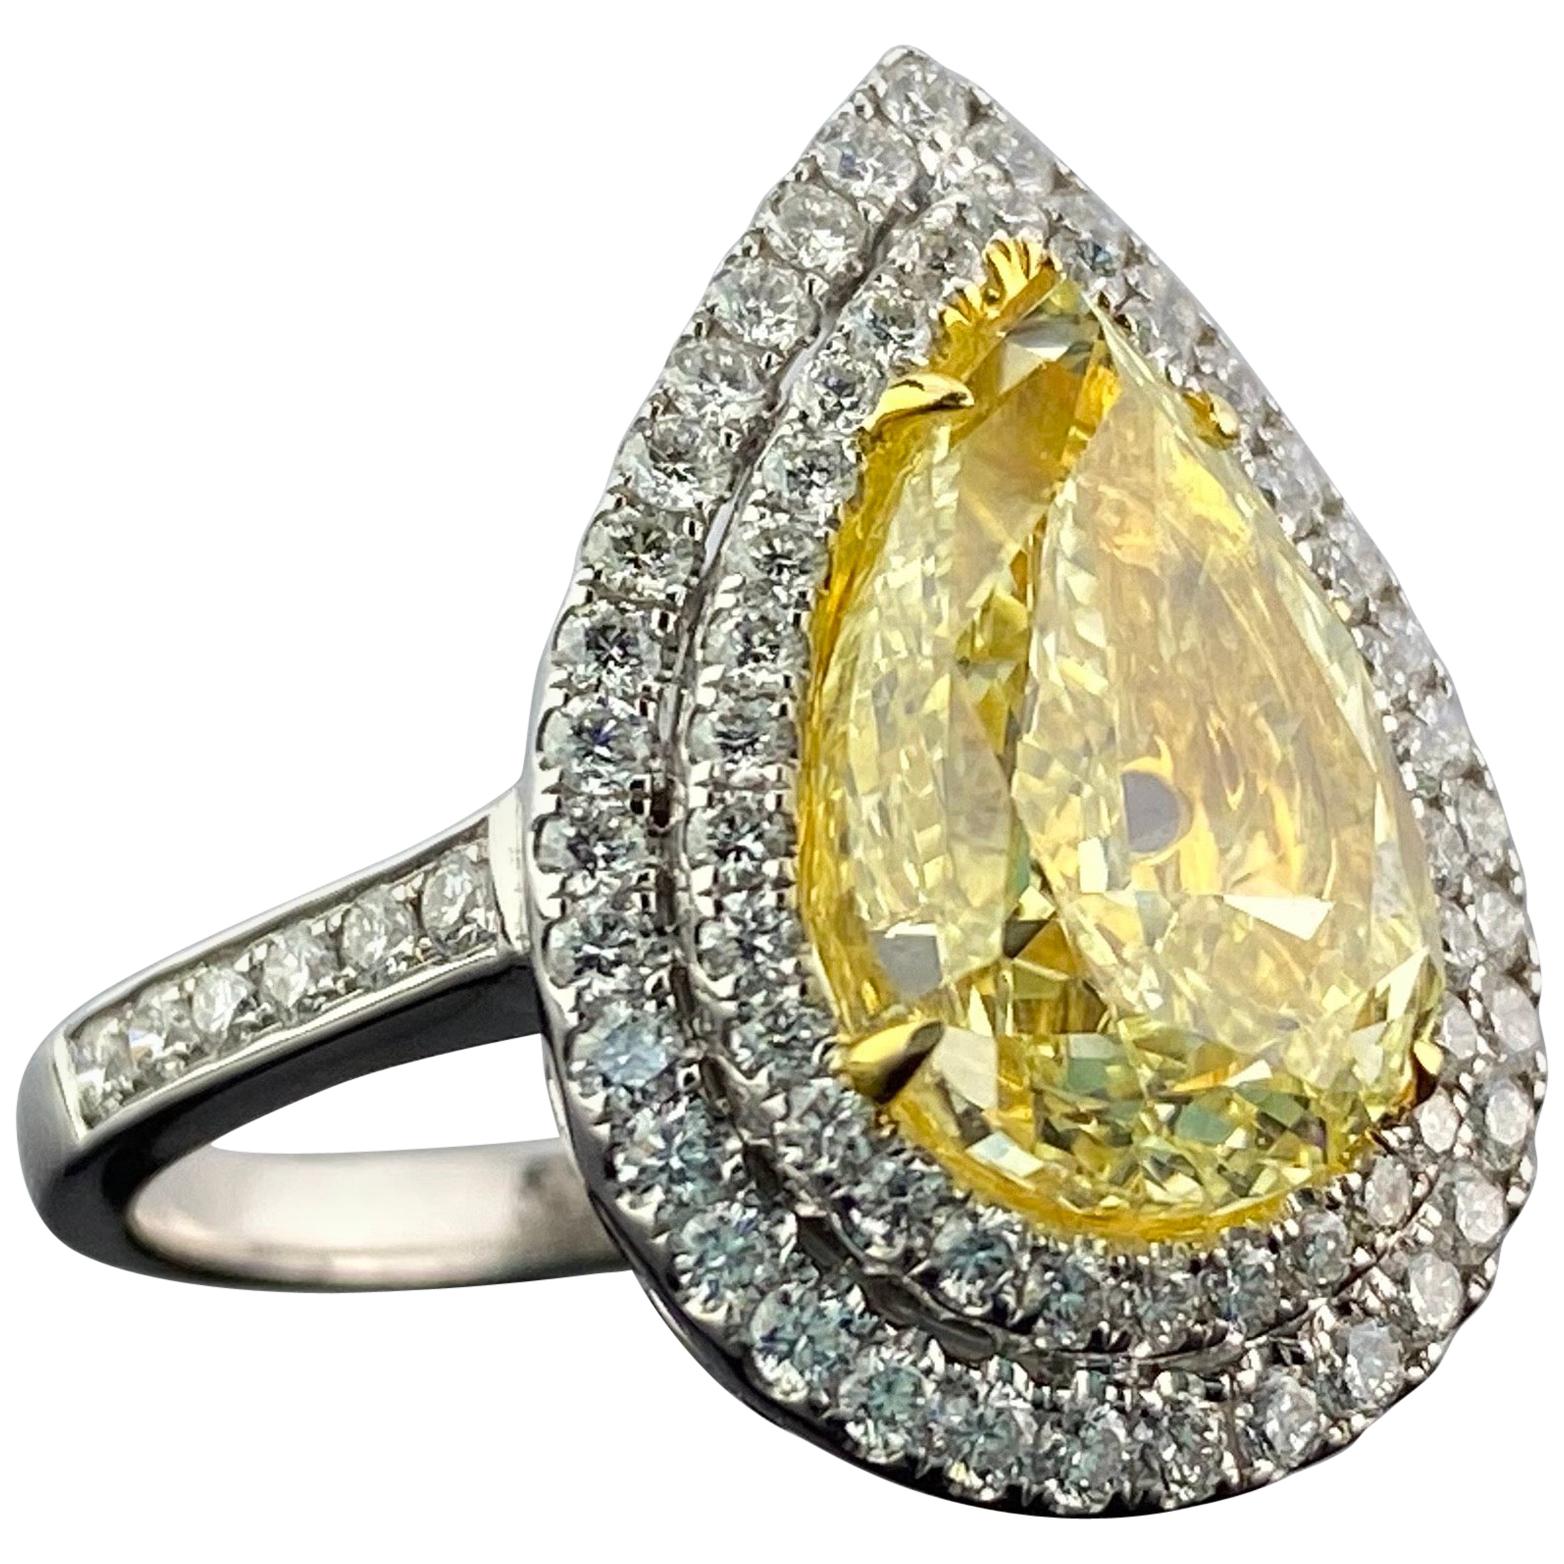 GIA Certified 5.02 Carat Yellow Diamond Engagement Ring